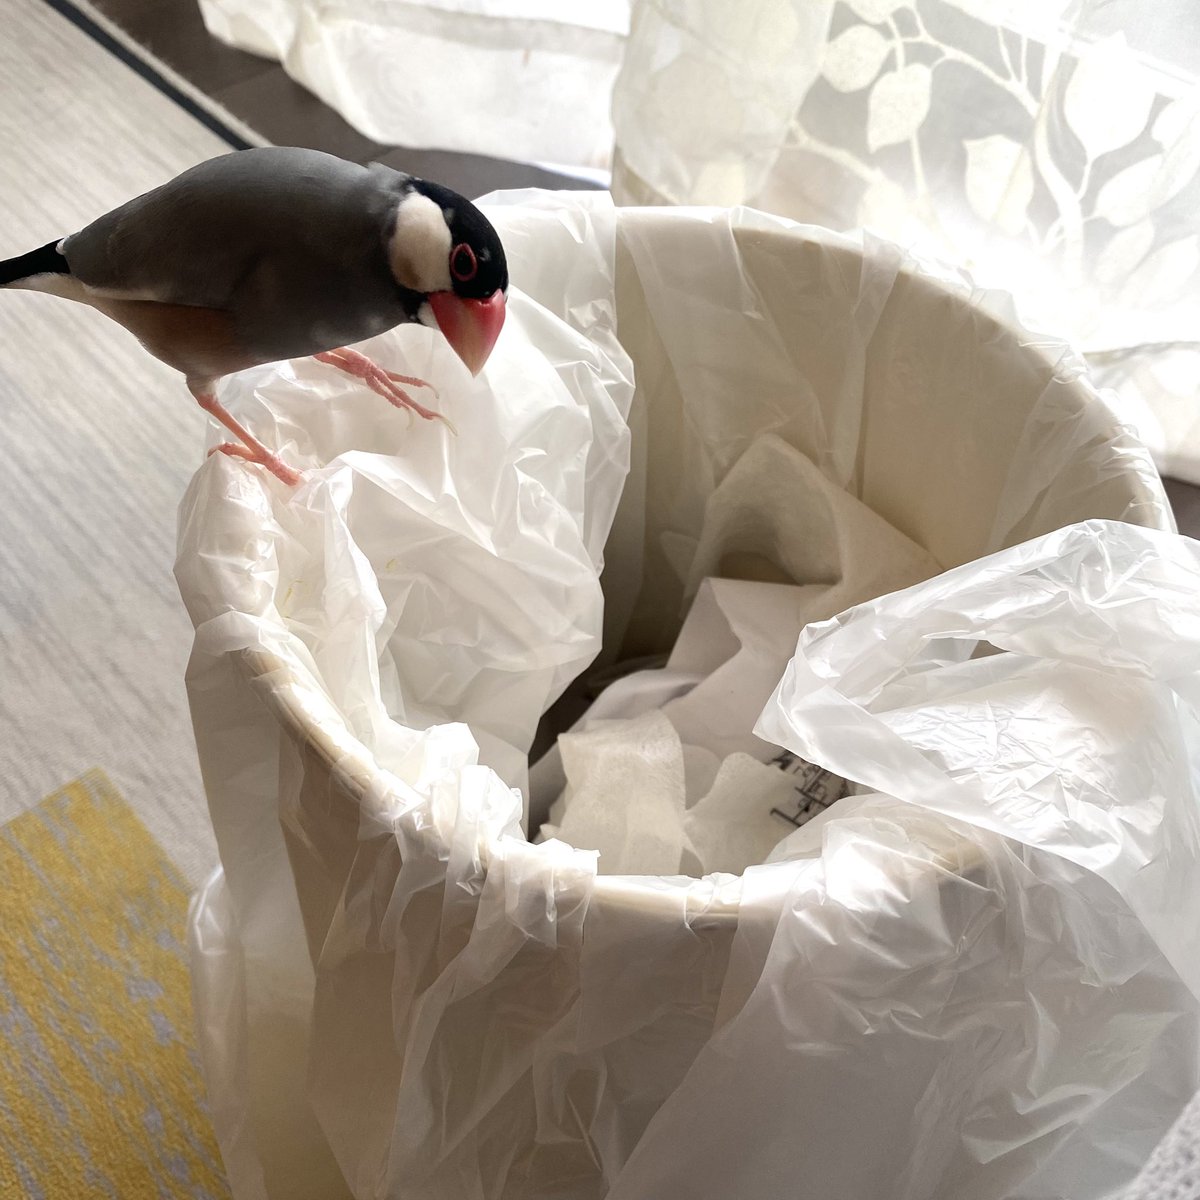 「クチバシの届かない奥へゴミを押し込んだカイヌシを無言で非難する文鳥。」|mdkのイラスト